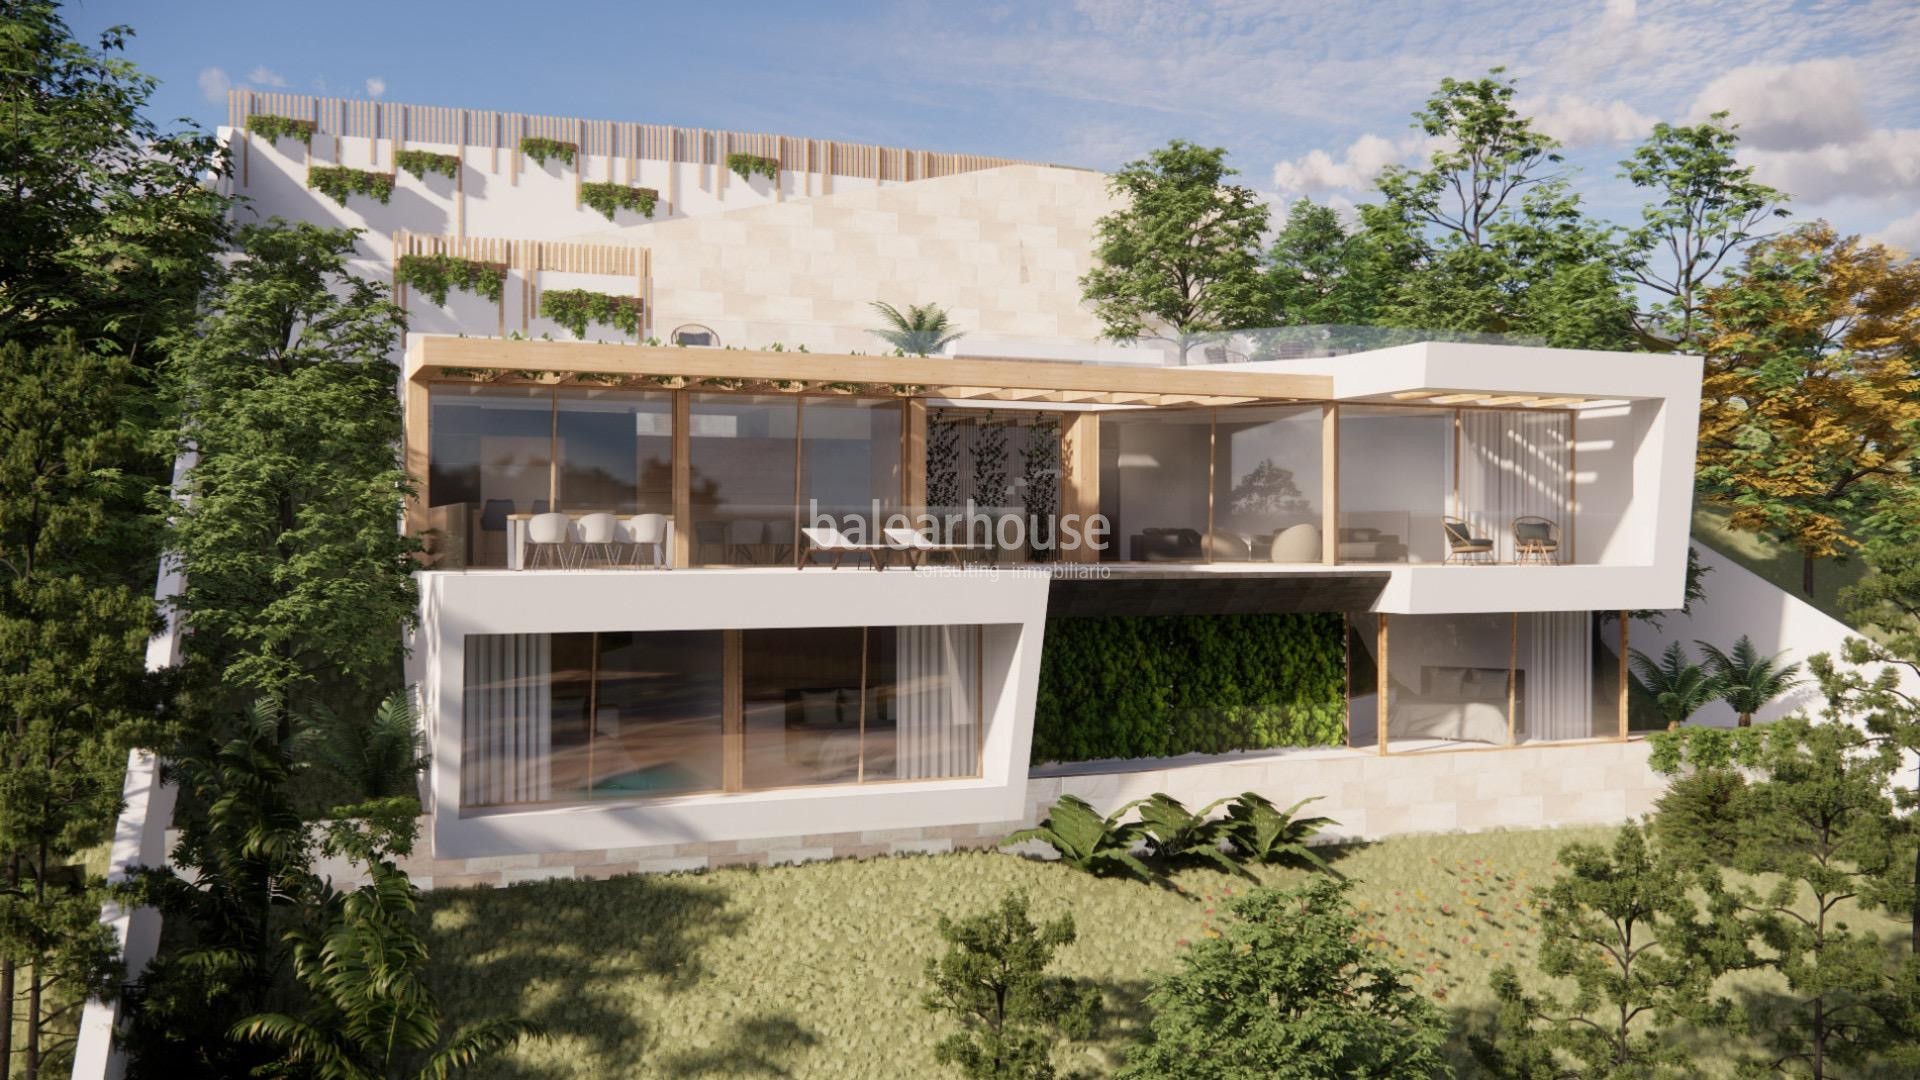 Ausgezeichnete neu gebaute Villa in Costa de la Calma mit Meerblick und Zugang zum Strand.